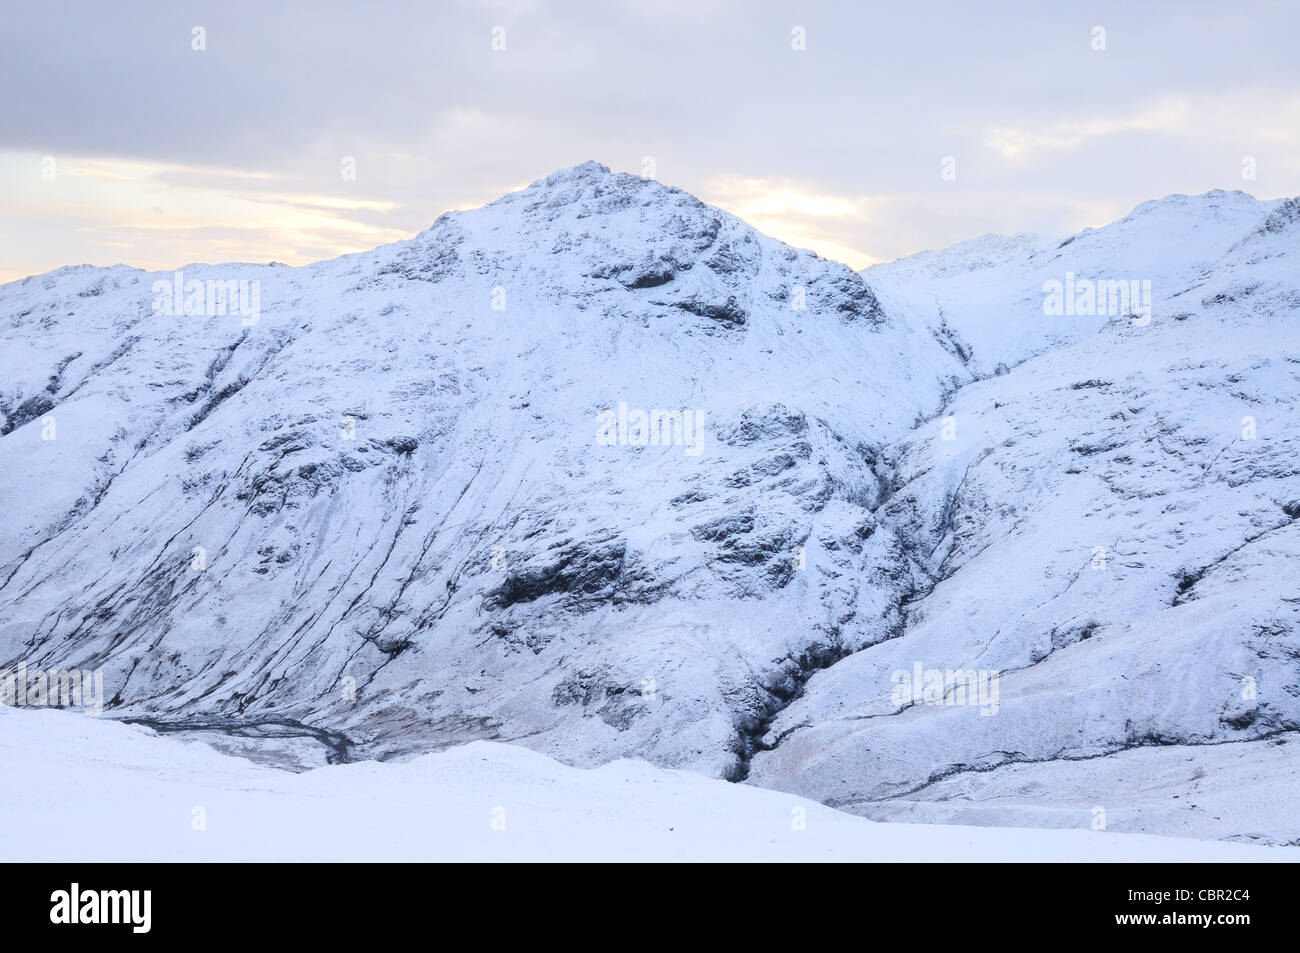 Pike O Blisko, Browney Gill und kalten Hecht im Schnee im englischen Lake District Stockfoto